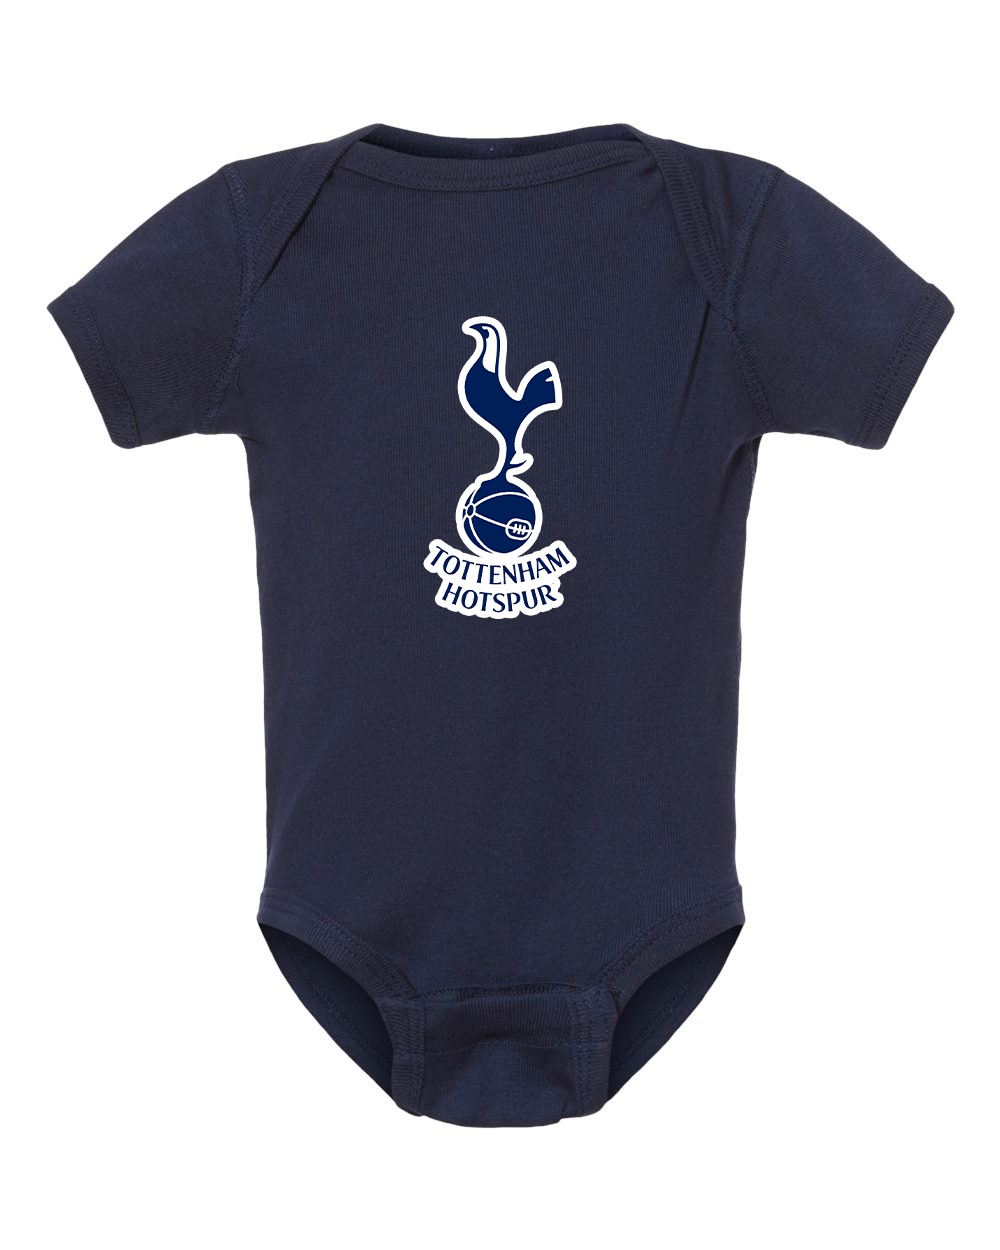 Baby Tottenham Hotspur F.C. Soccer Romper Onesie